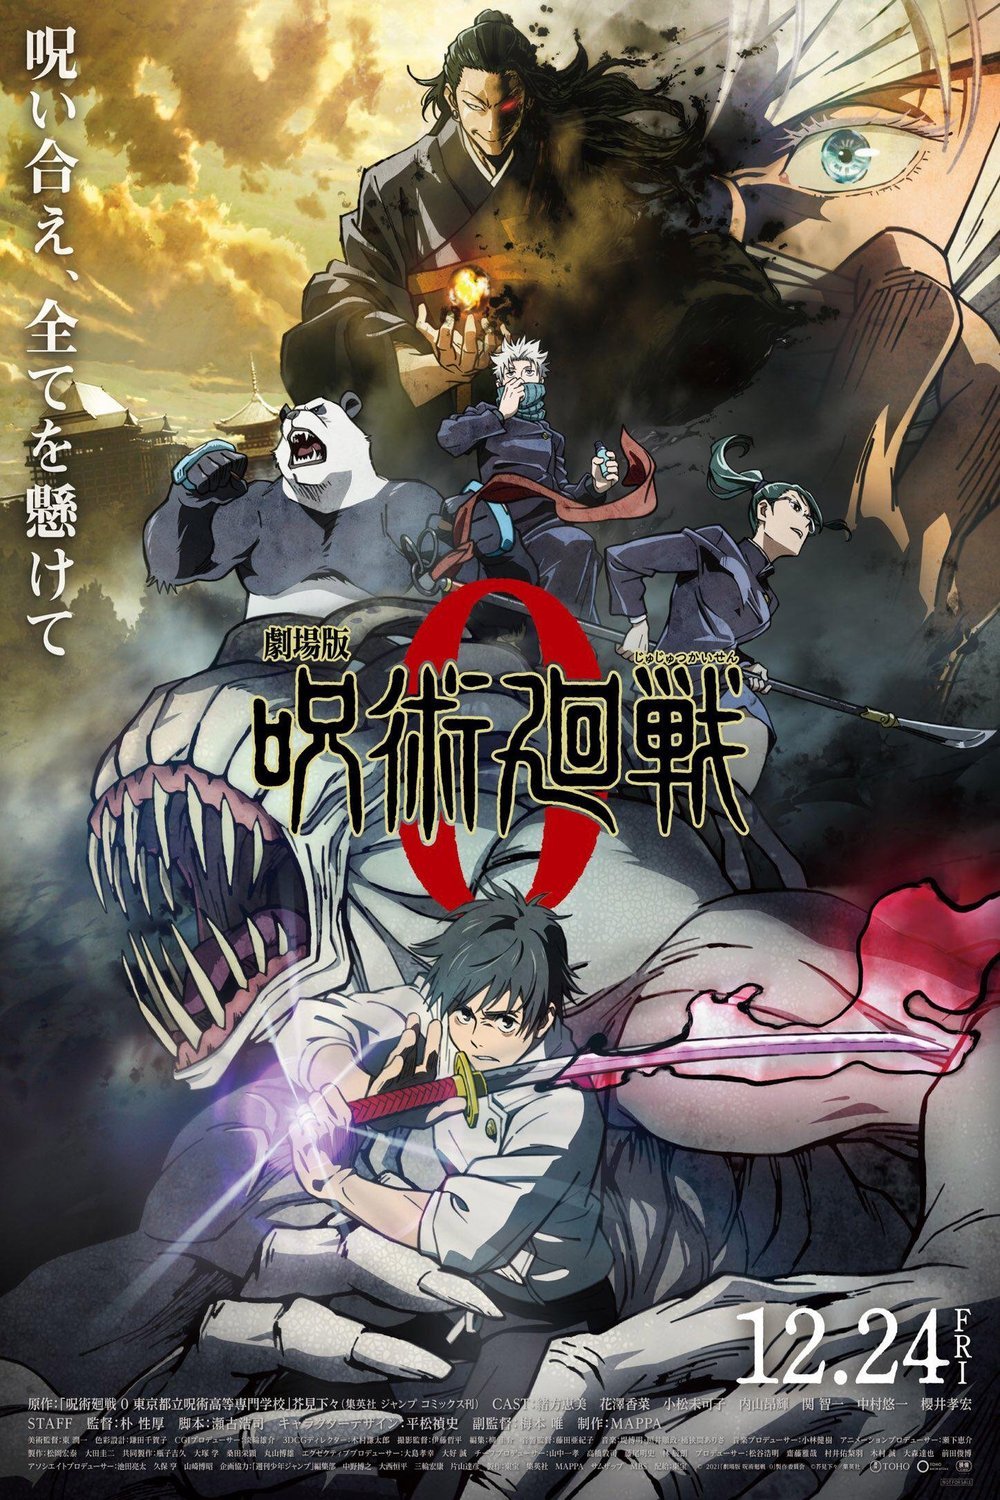 L'affiche originale du film Jujutsu Kaisen 0: The Movie en japonais